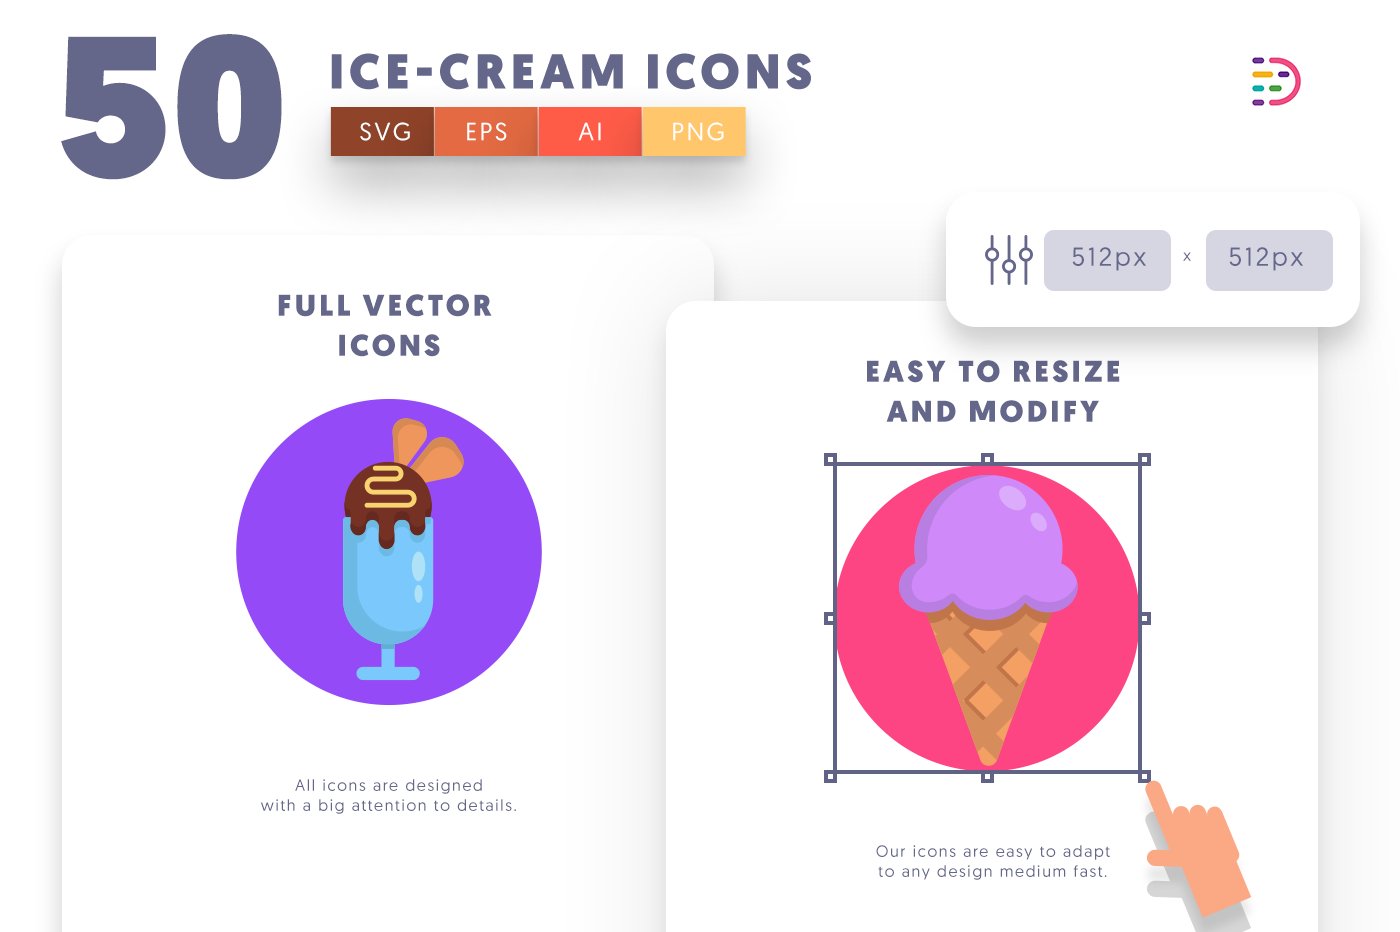 icecream icons cover 6 147